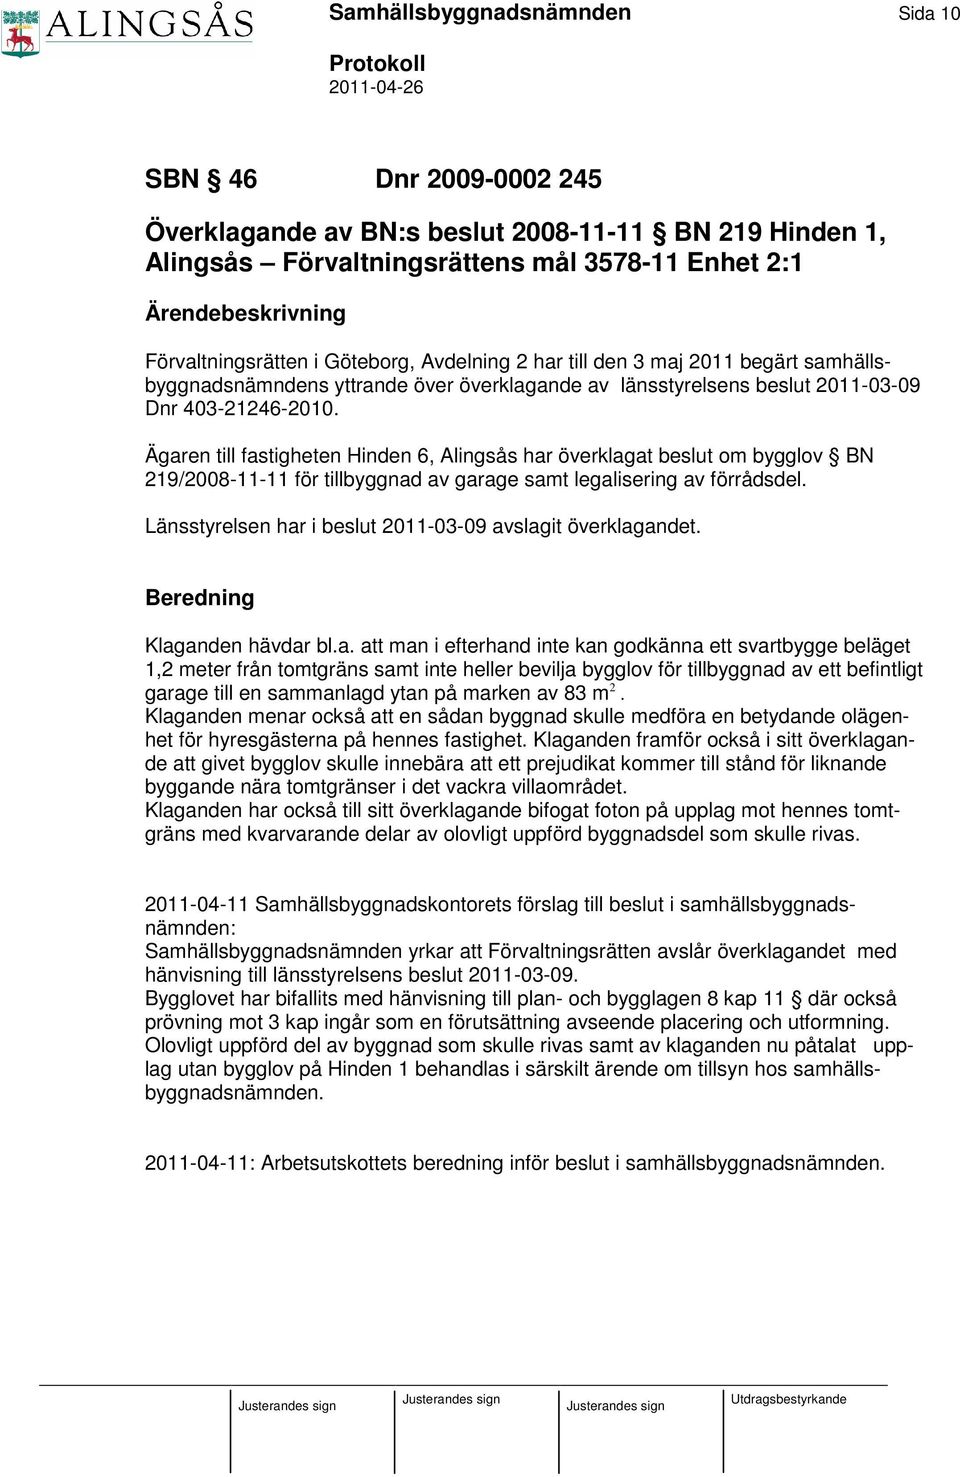 Ägaren till fastigheten Hinden 6, Alingsås har överklagat beslut om bygglov BN 219/2008-11-11 för tillbyggnad av garage samt legalisering av förrådsdel.